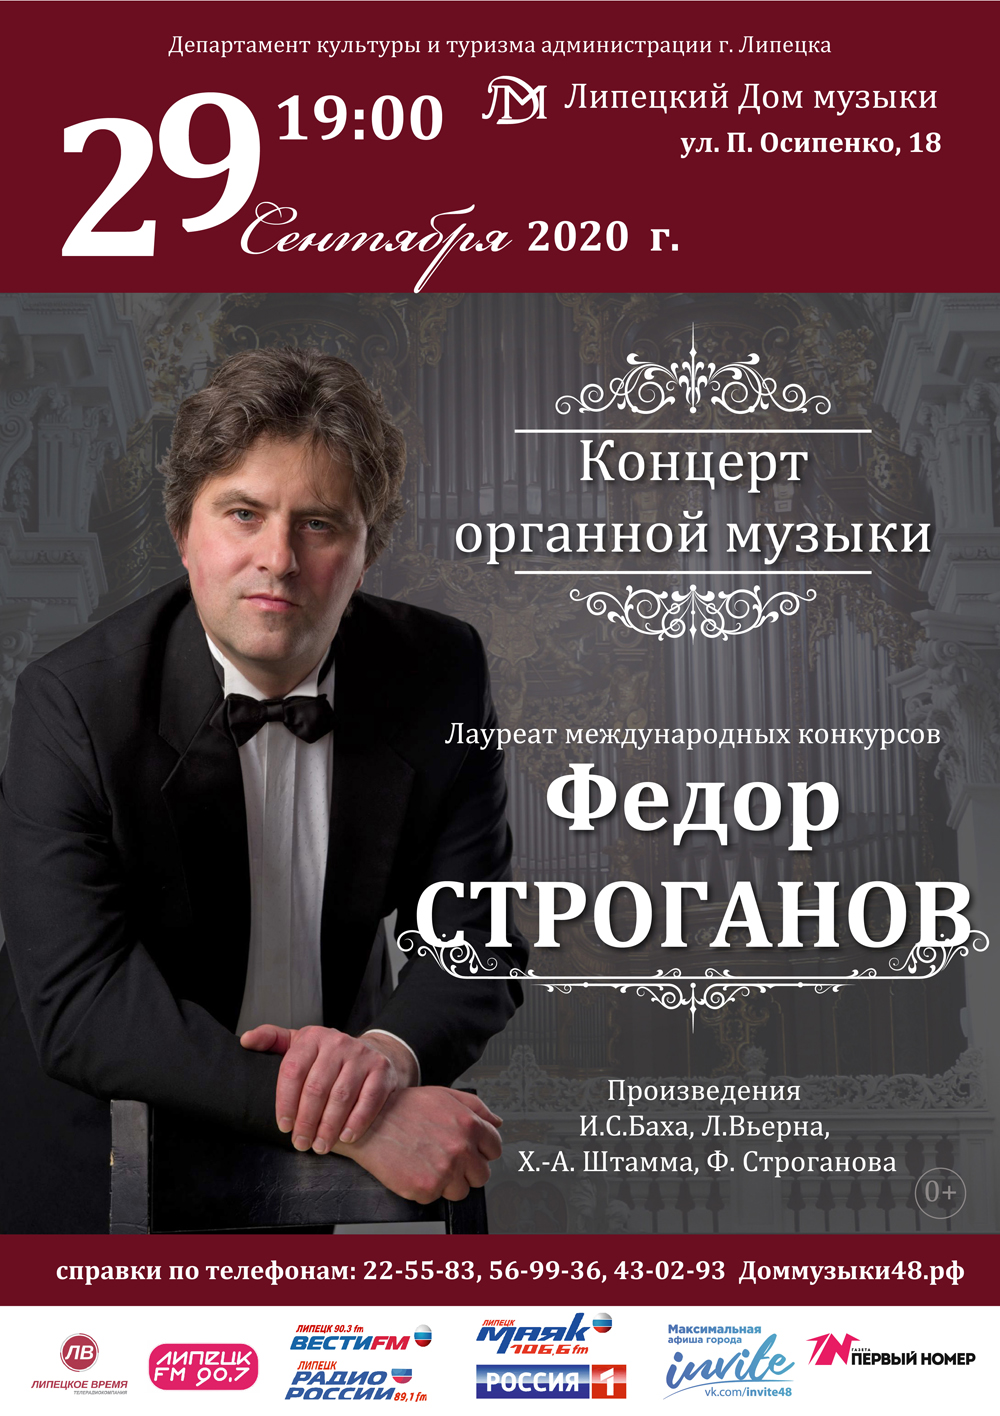 Концерт органной музыки (29.09.2020 в 19:00)